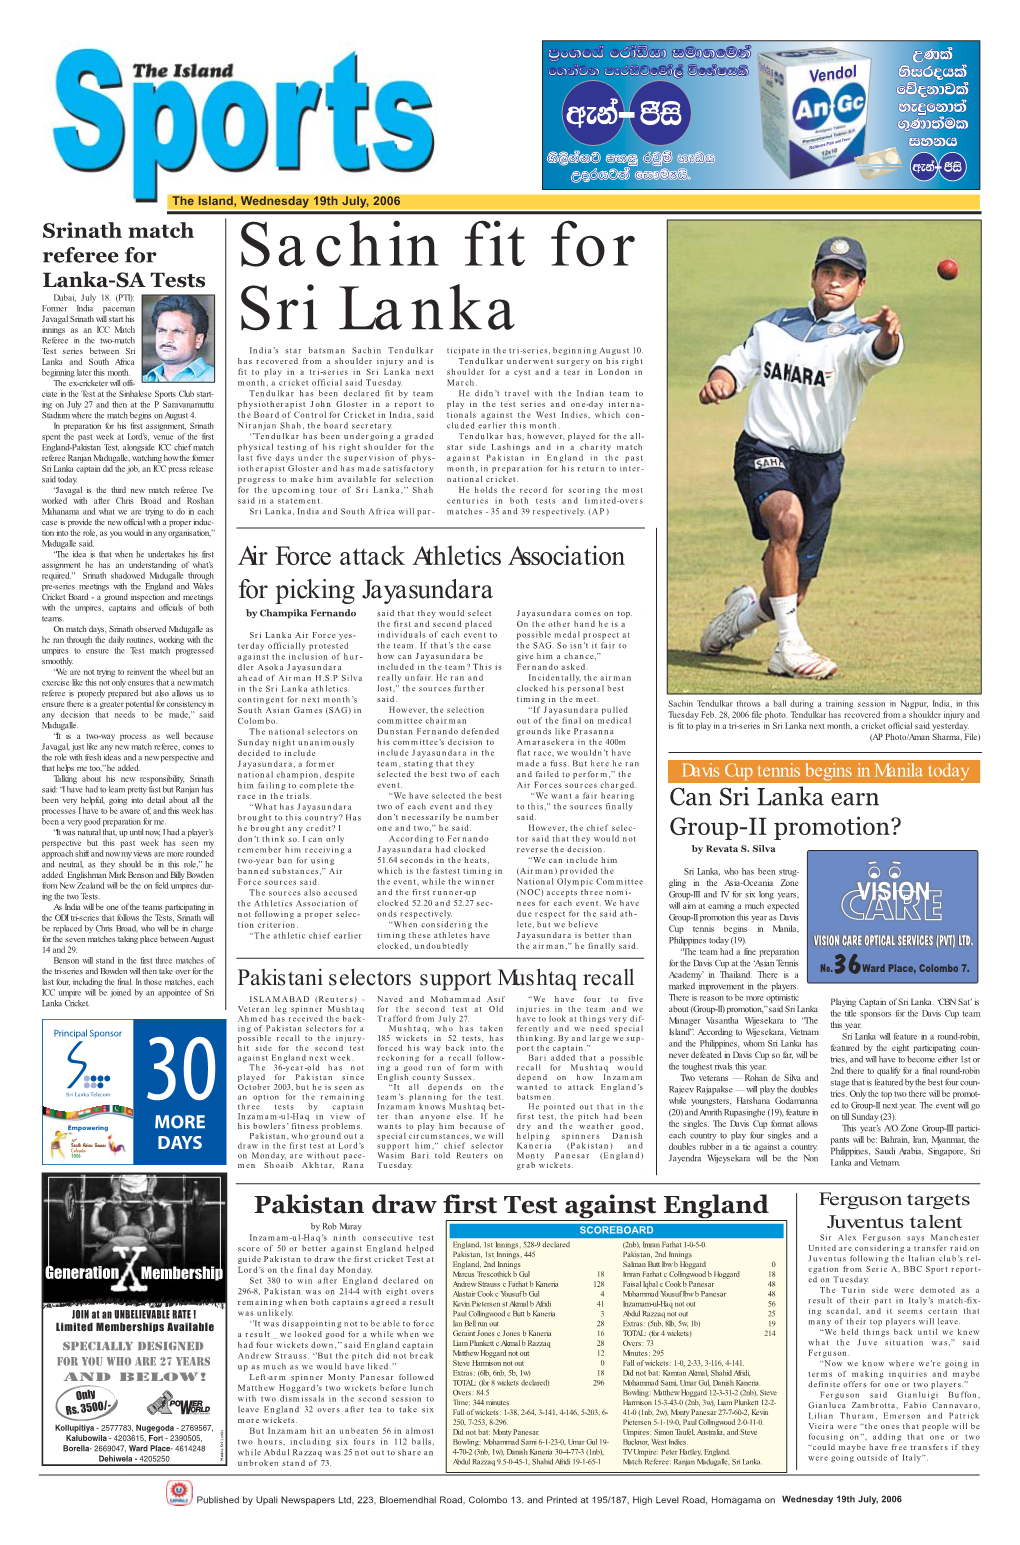 Sachin Fit for Sri Lanka